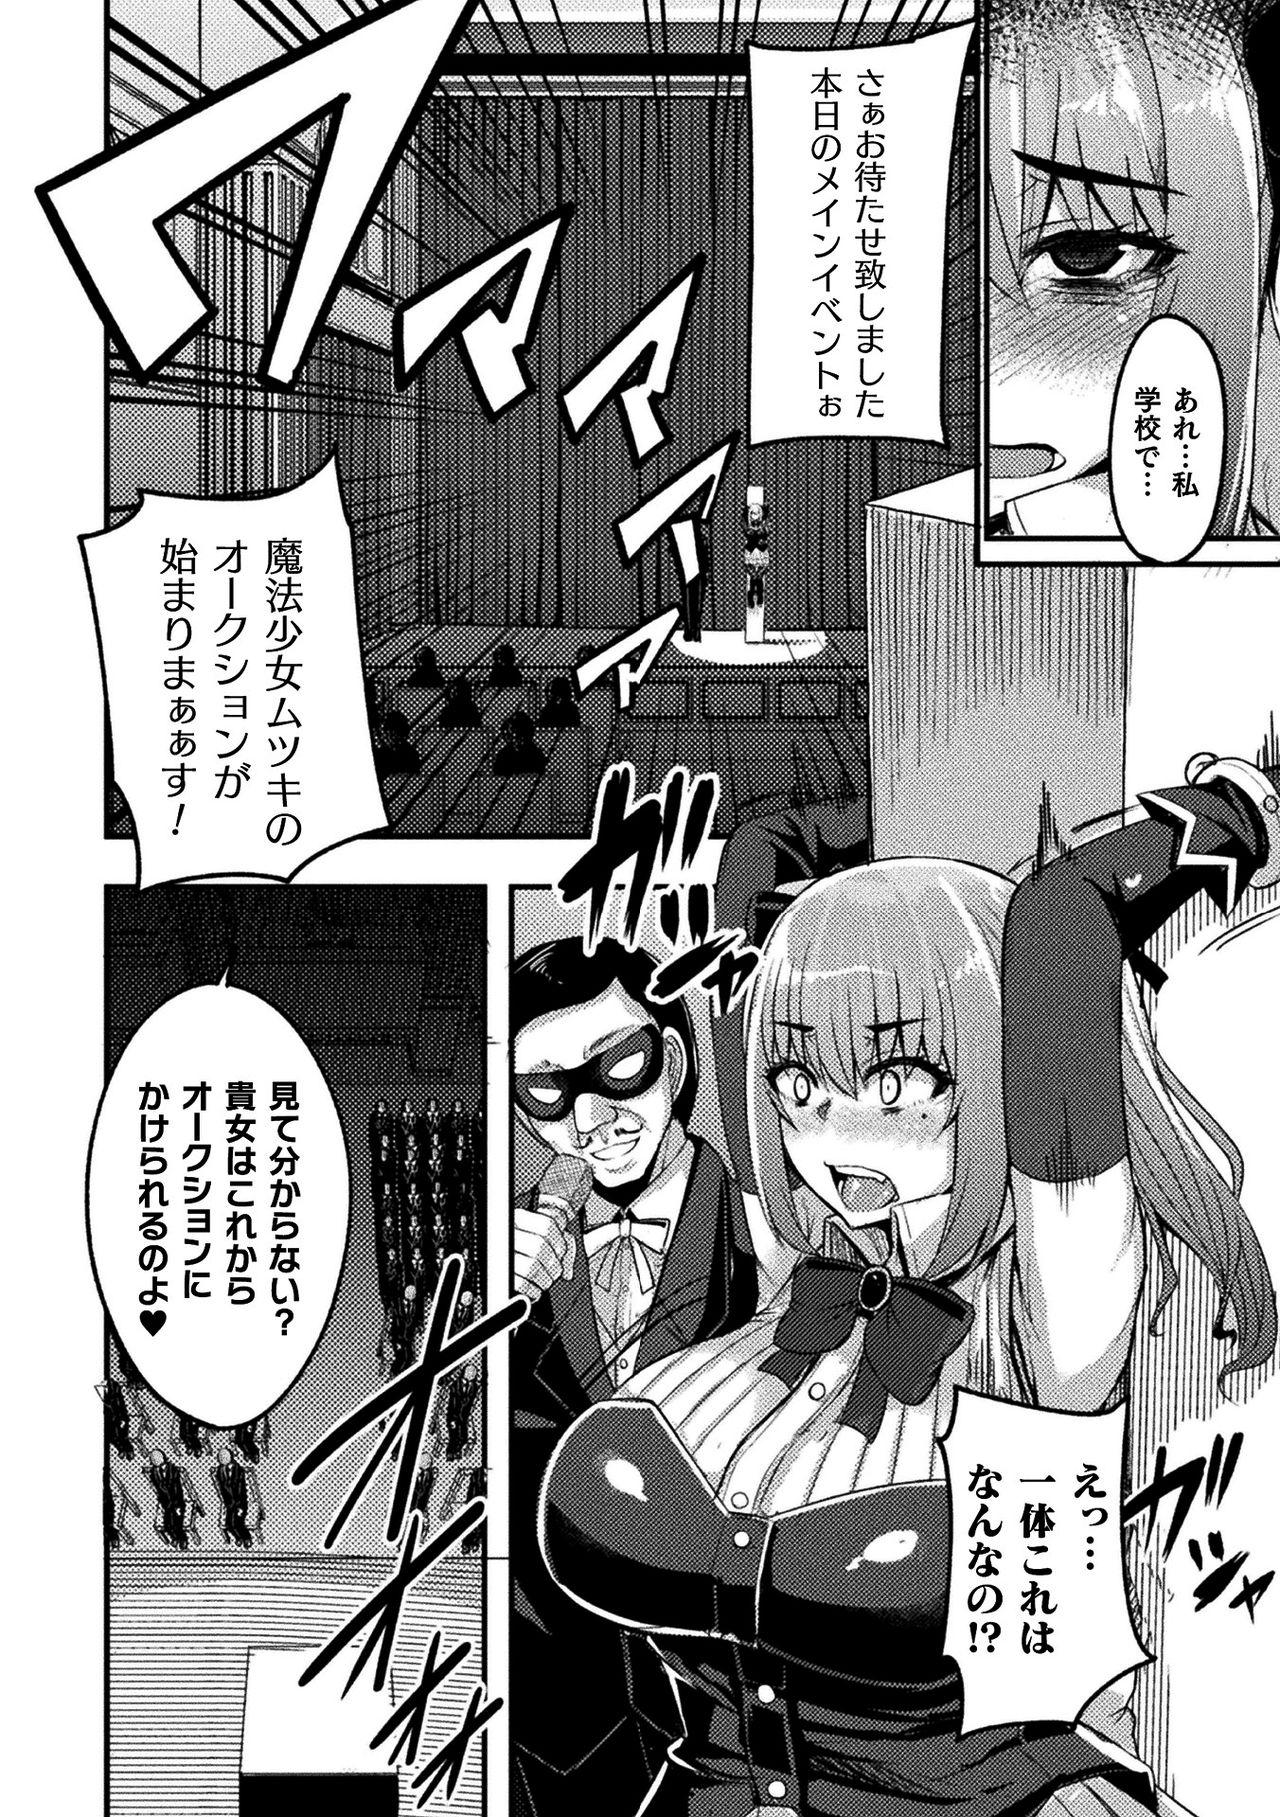 Prostitute 2D Comic Magazine Mahou Shoujo Seidorei Auction e Youkoso! Vol. 2 Tia - Page 8